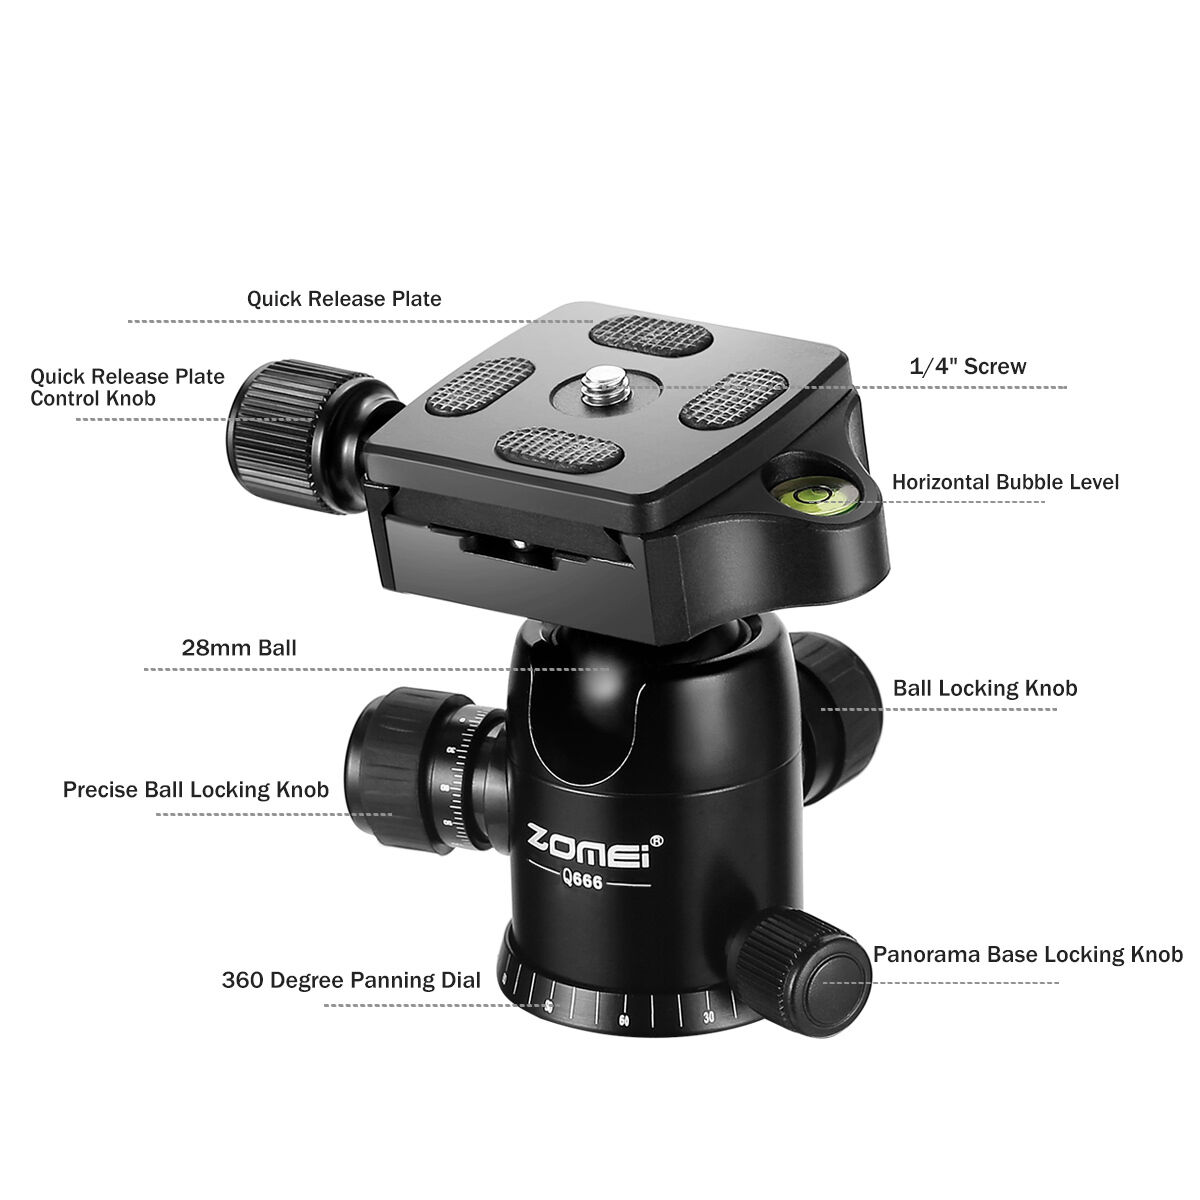 ZOMEI Q666 Portable Professional Tripod Monopod&Ball Head Travel for DSLR Camera Zomei Q666 - фотография #3